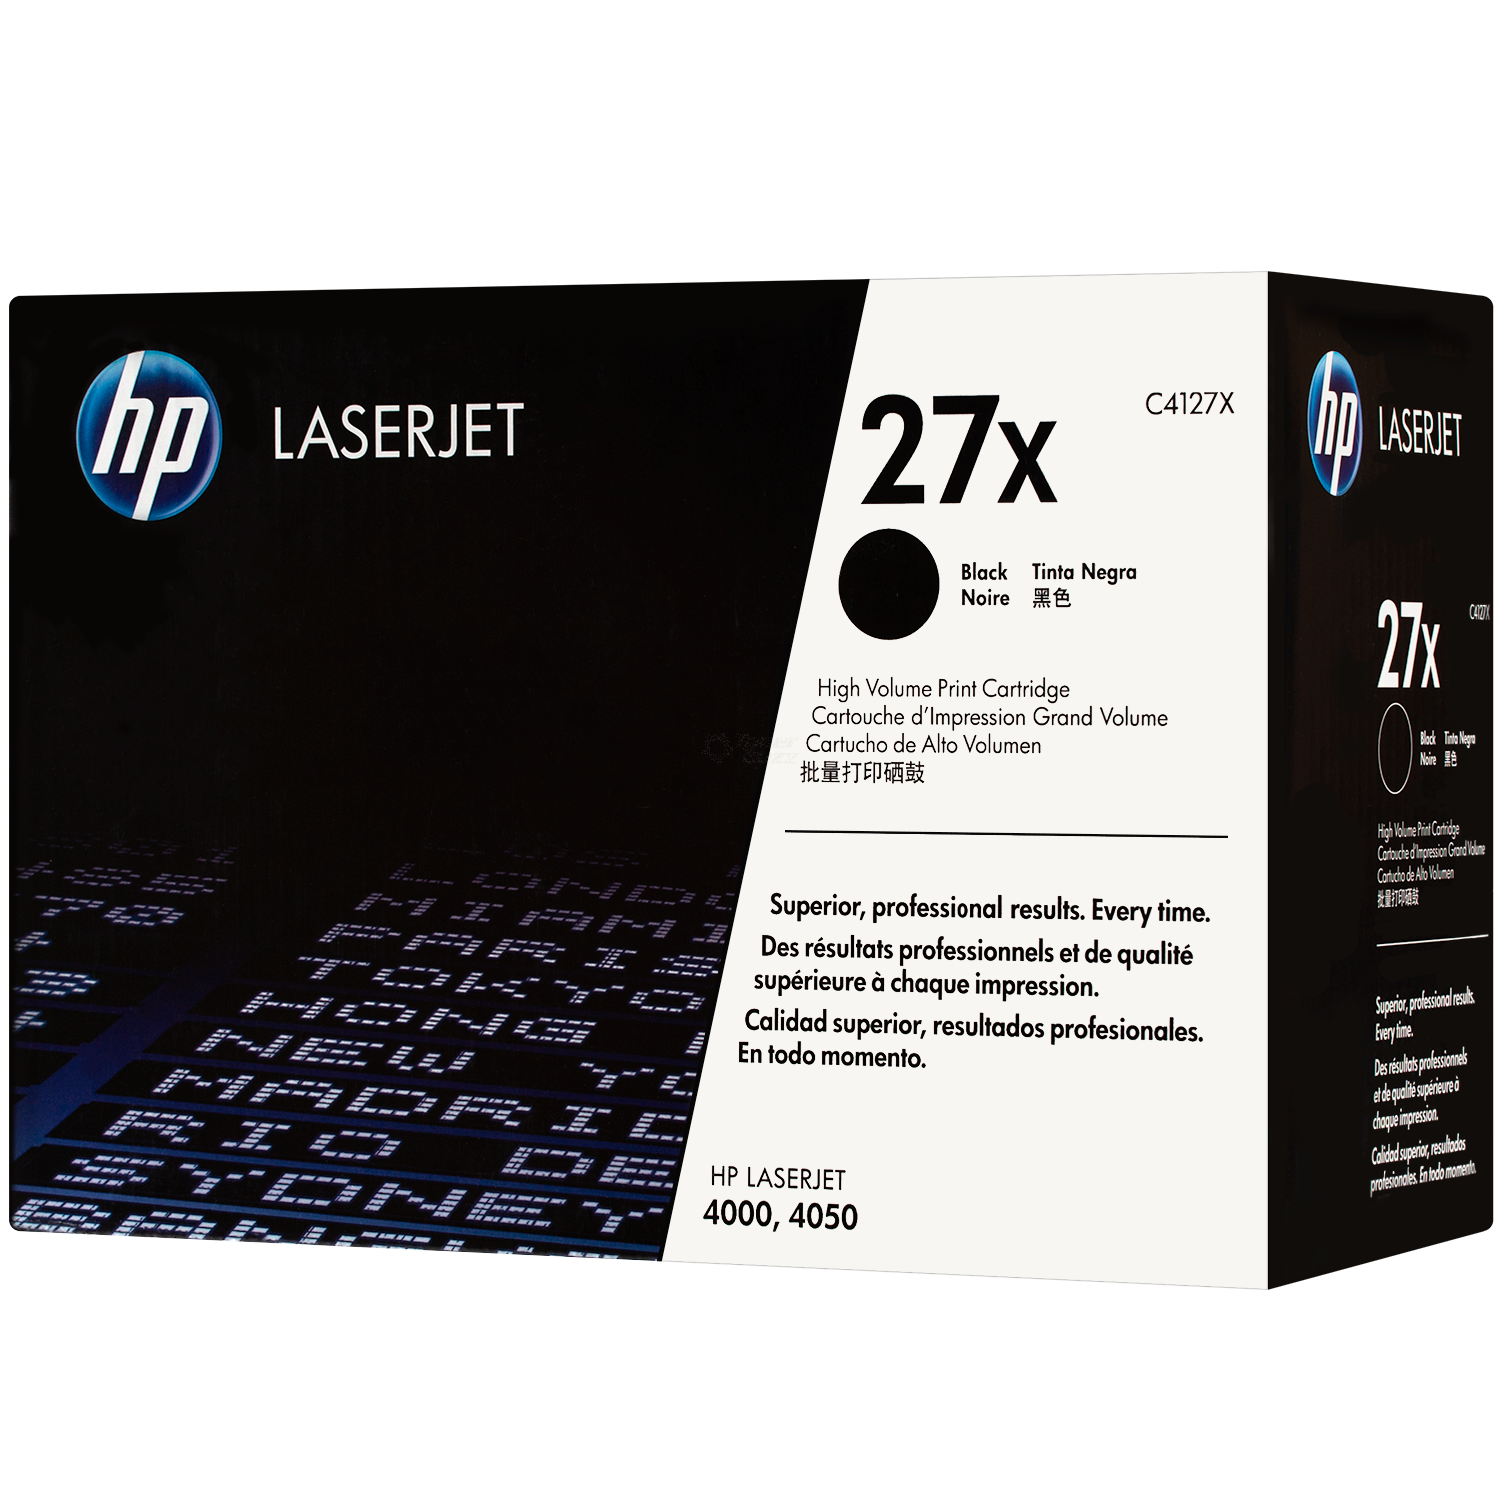 1 Pack Compatible C4127X 27X Black Toner For HP LaserJet 4000 4000TN 4050N 4050 